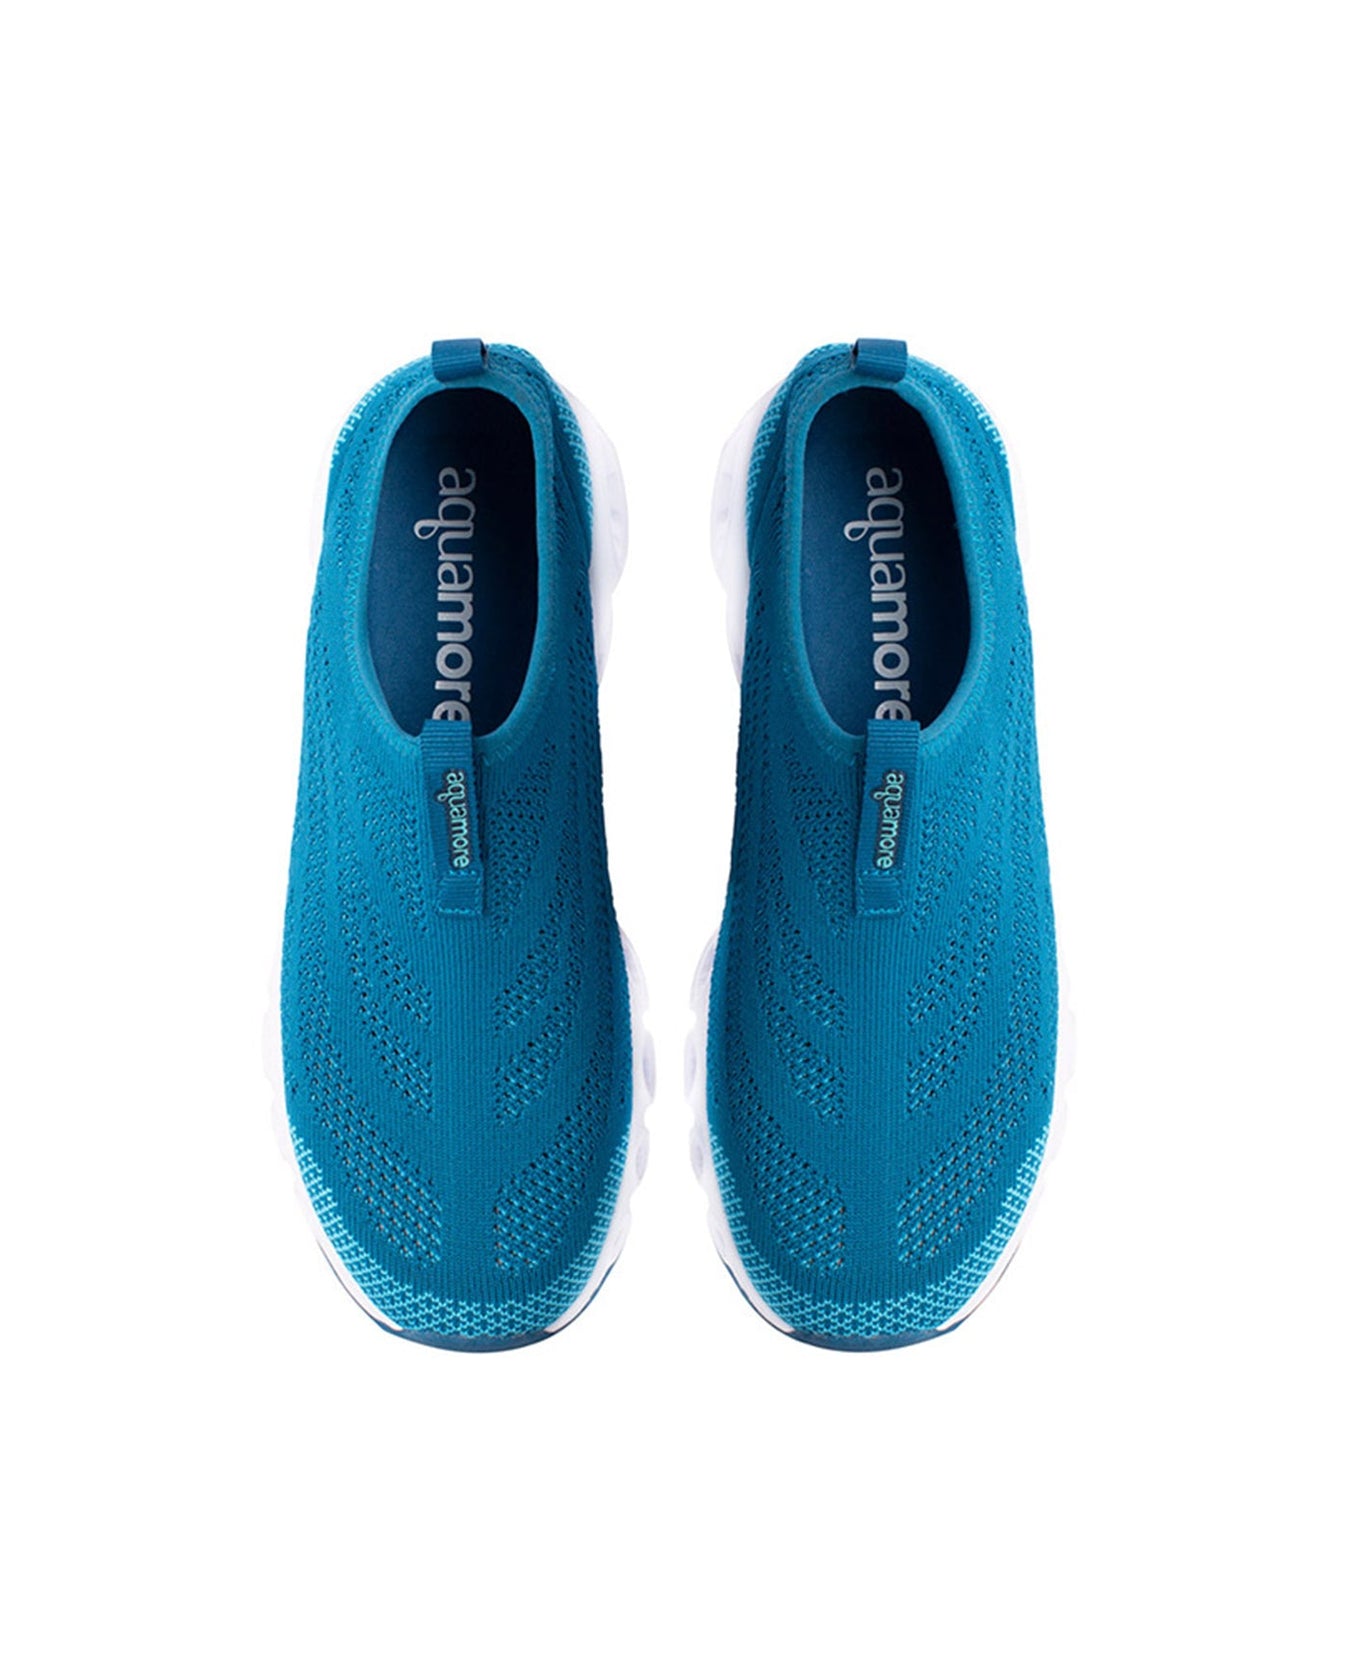 Chlorine Resistant Aquamore Color Block Aqua Cruiser Women's Water Shoe ...